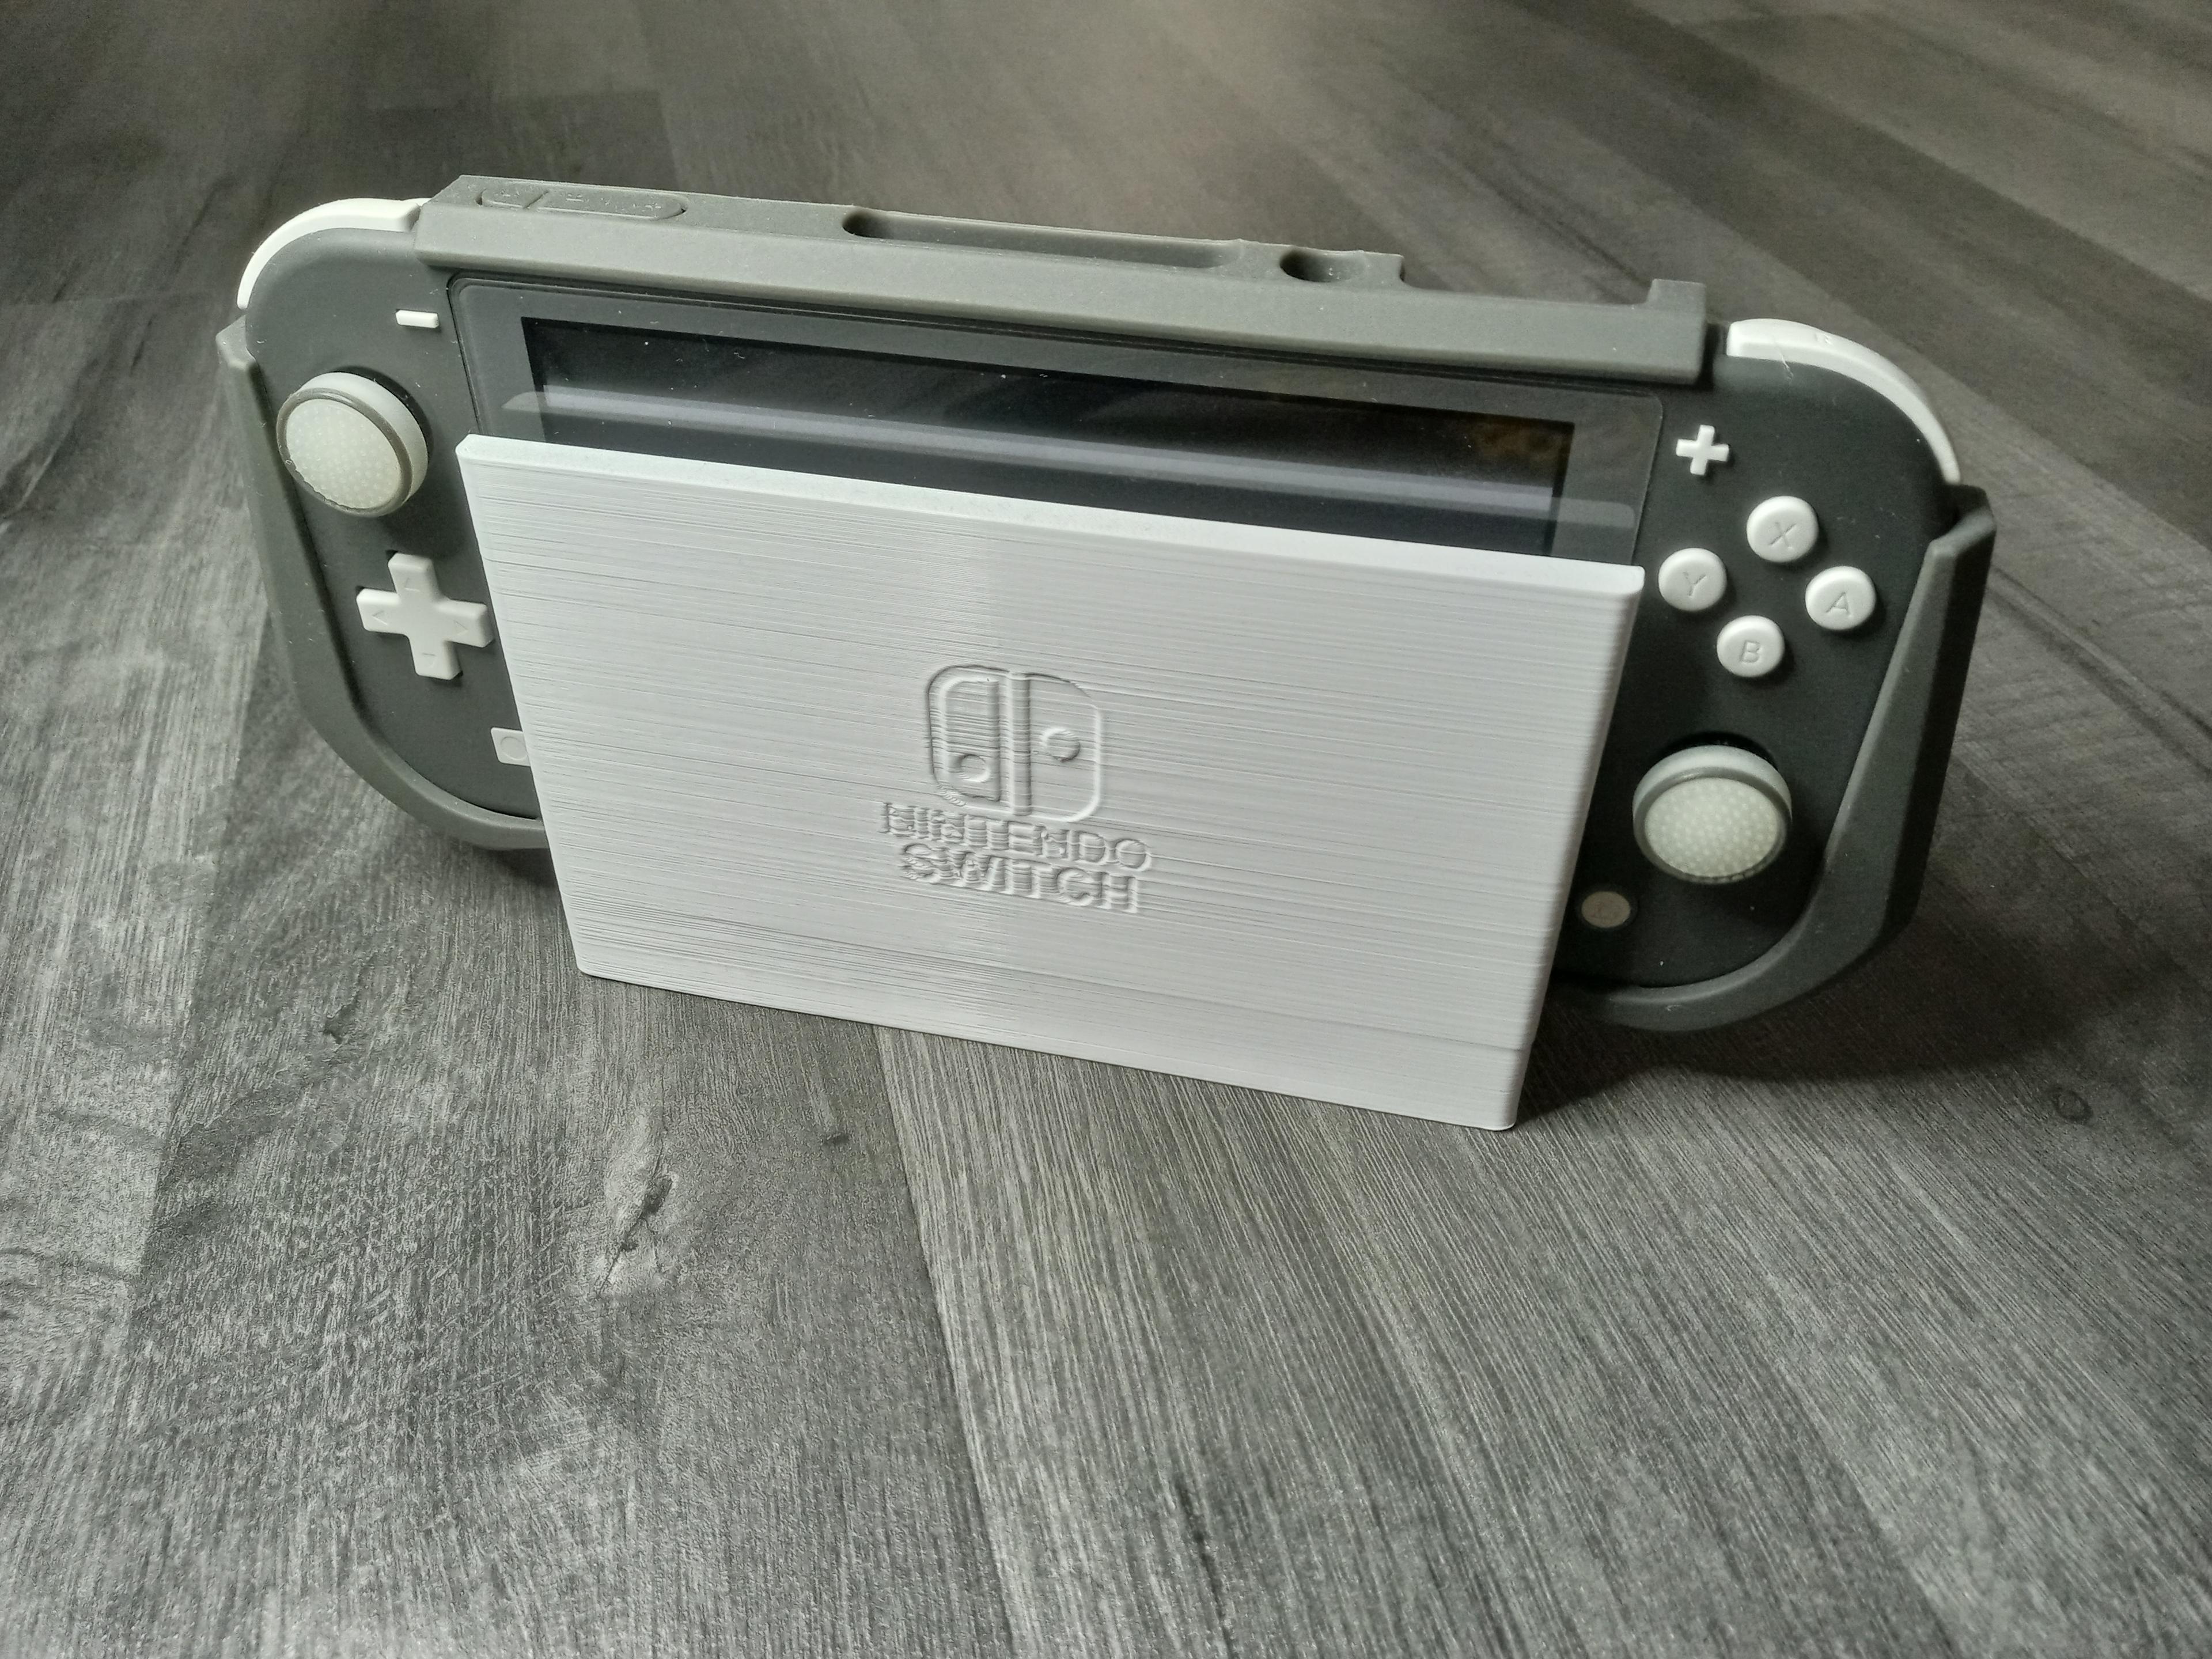 Nintendo Switch lite dock 3d model